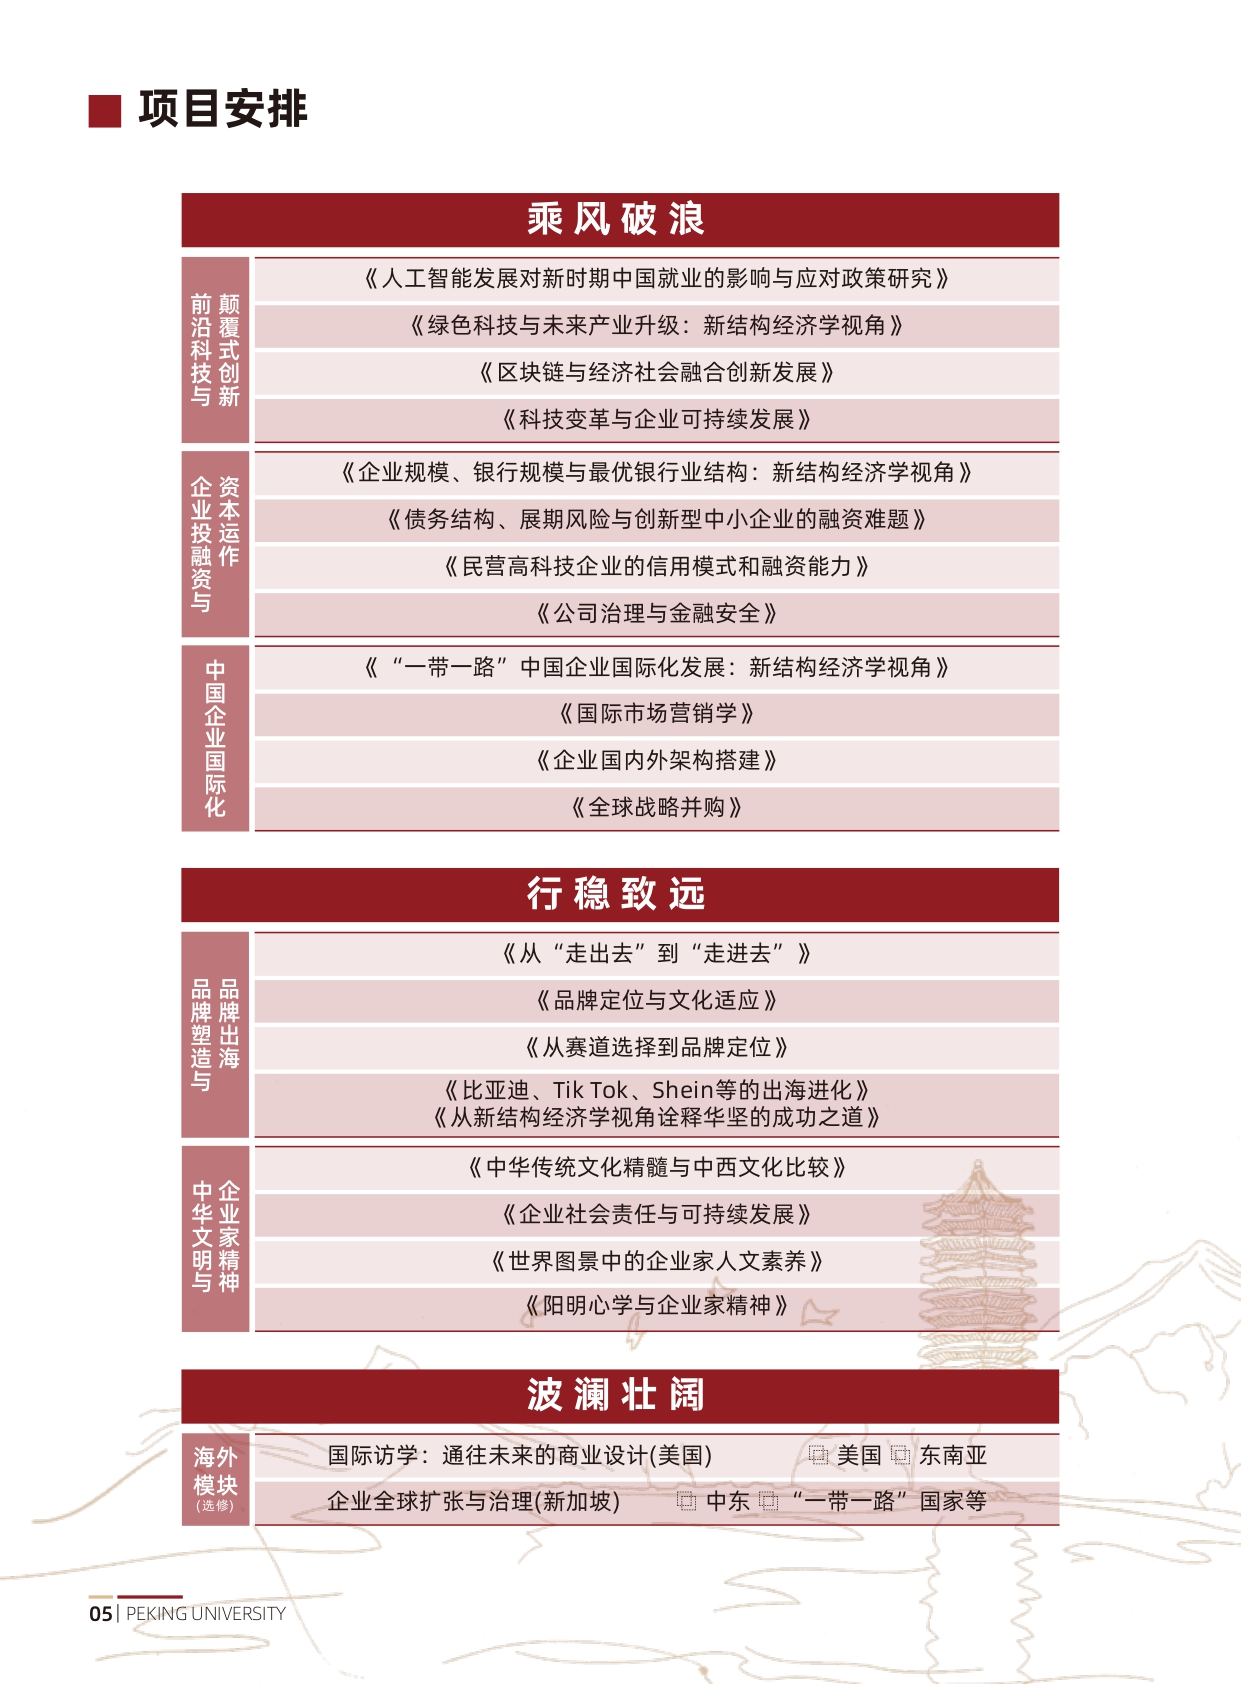 北京大学中国企业全球化与品牌出海实践项目研修班(1)_page-0006.jpg